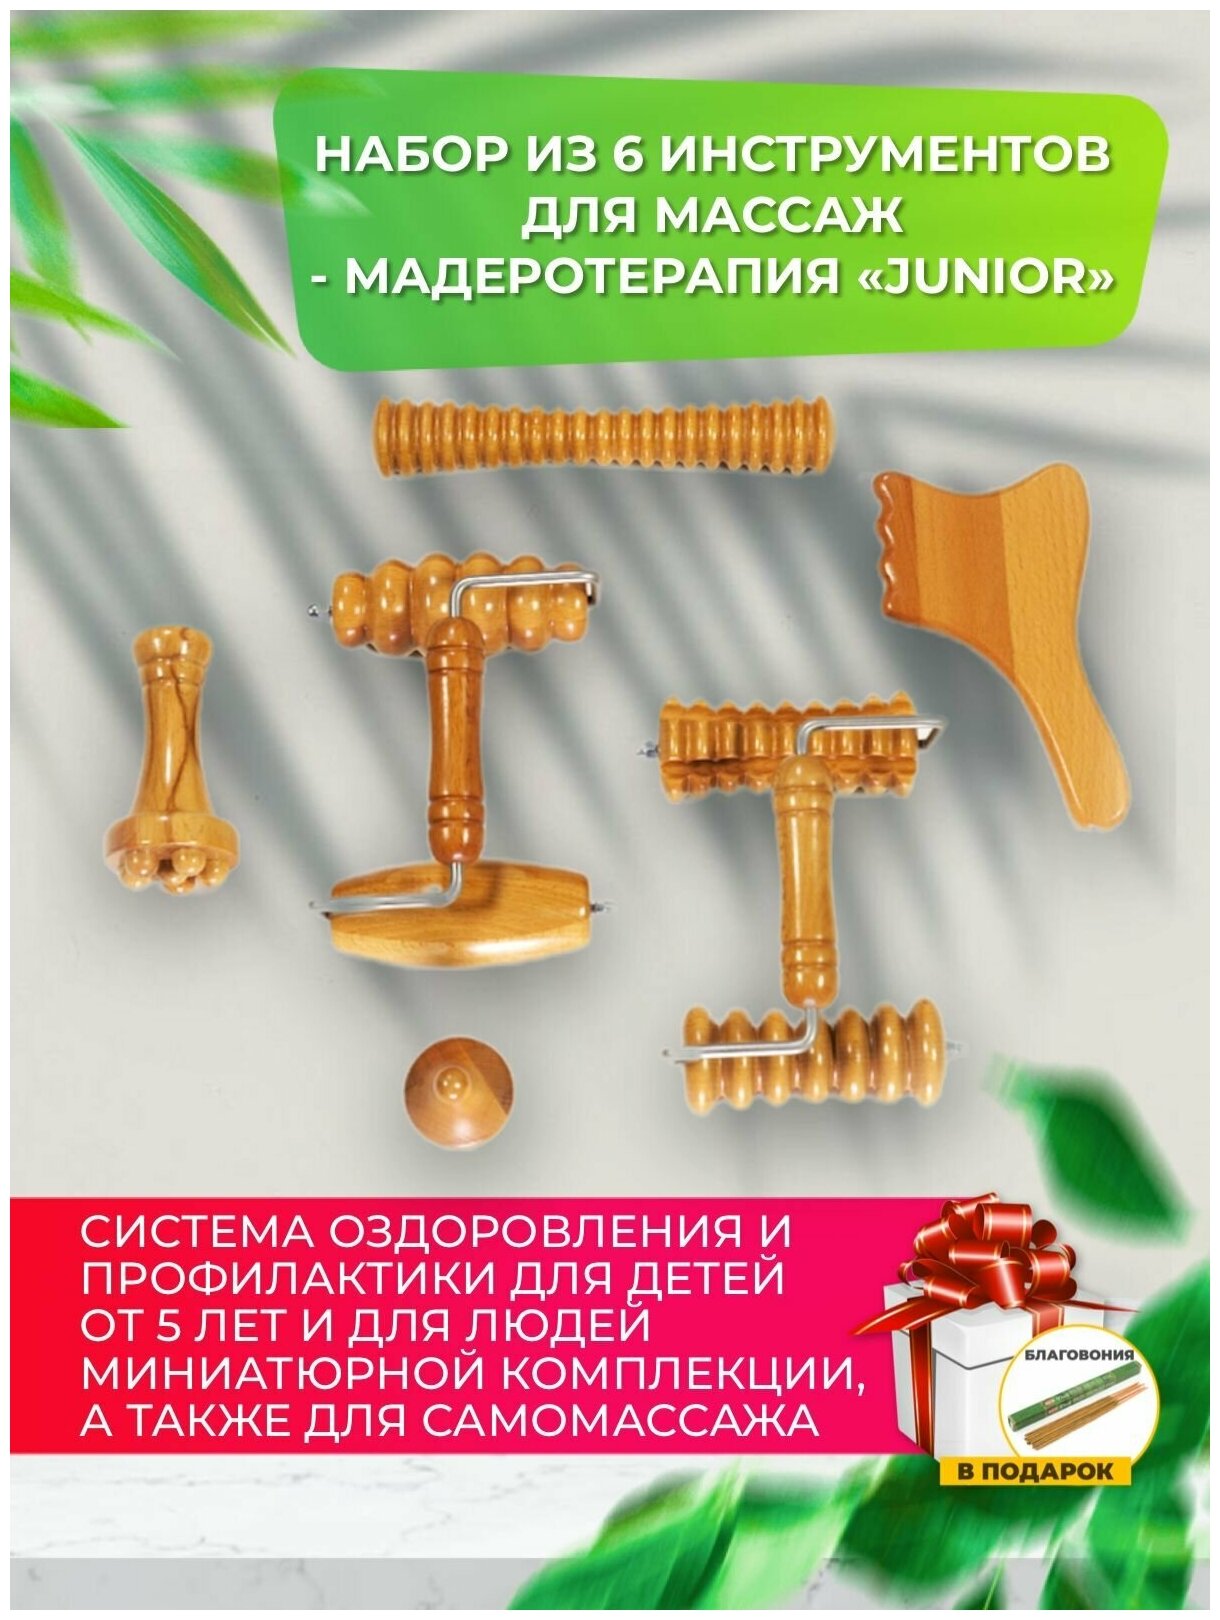 Madesto Lab/Комплект Junior/Детский массаж/Массажер деревянный/Модеротерапия /Как делать массаж/Массажер купить/massage